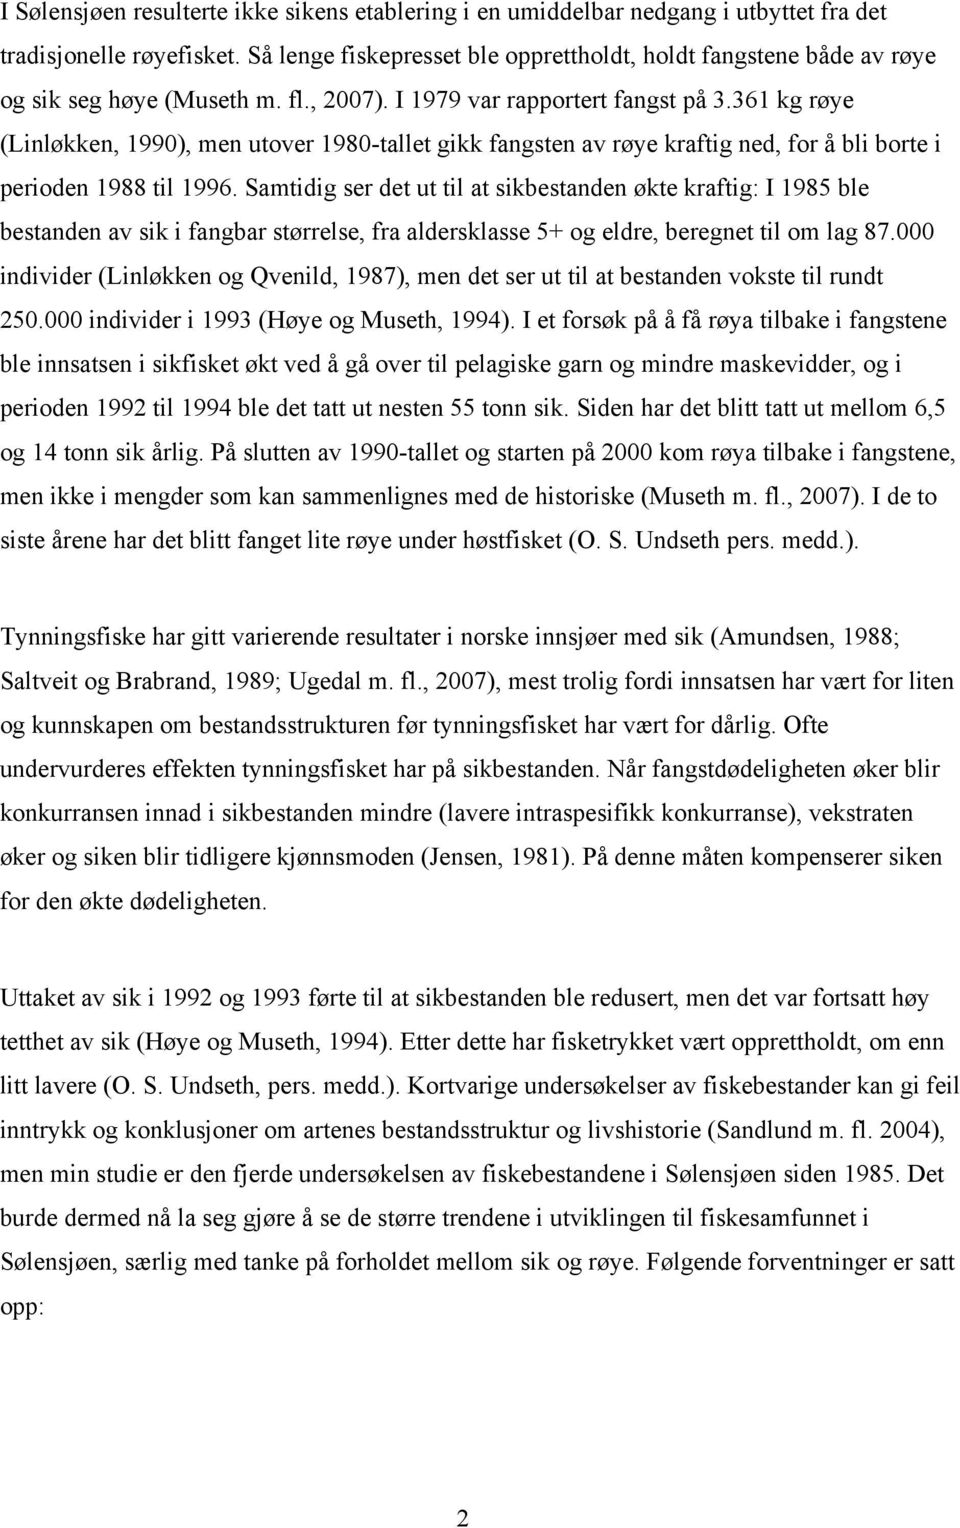 361 kg røye (Linløkken, 1990), men utover 1980-tallet gikk fangsten av røye kraftig ned, for å bli borte i perioden 1988 til 1996.